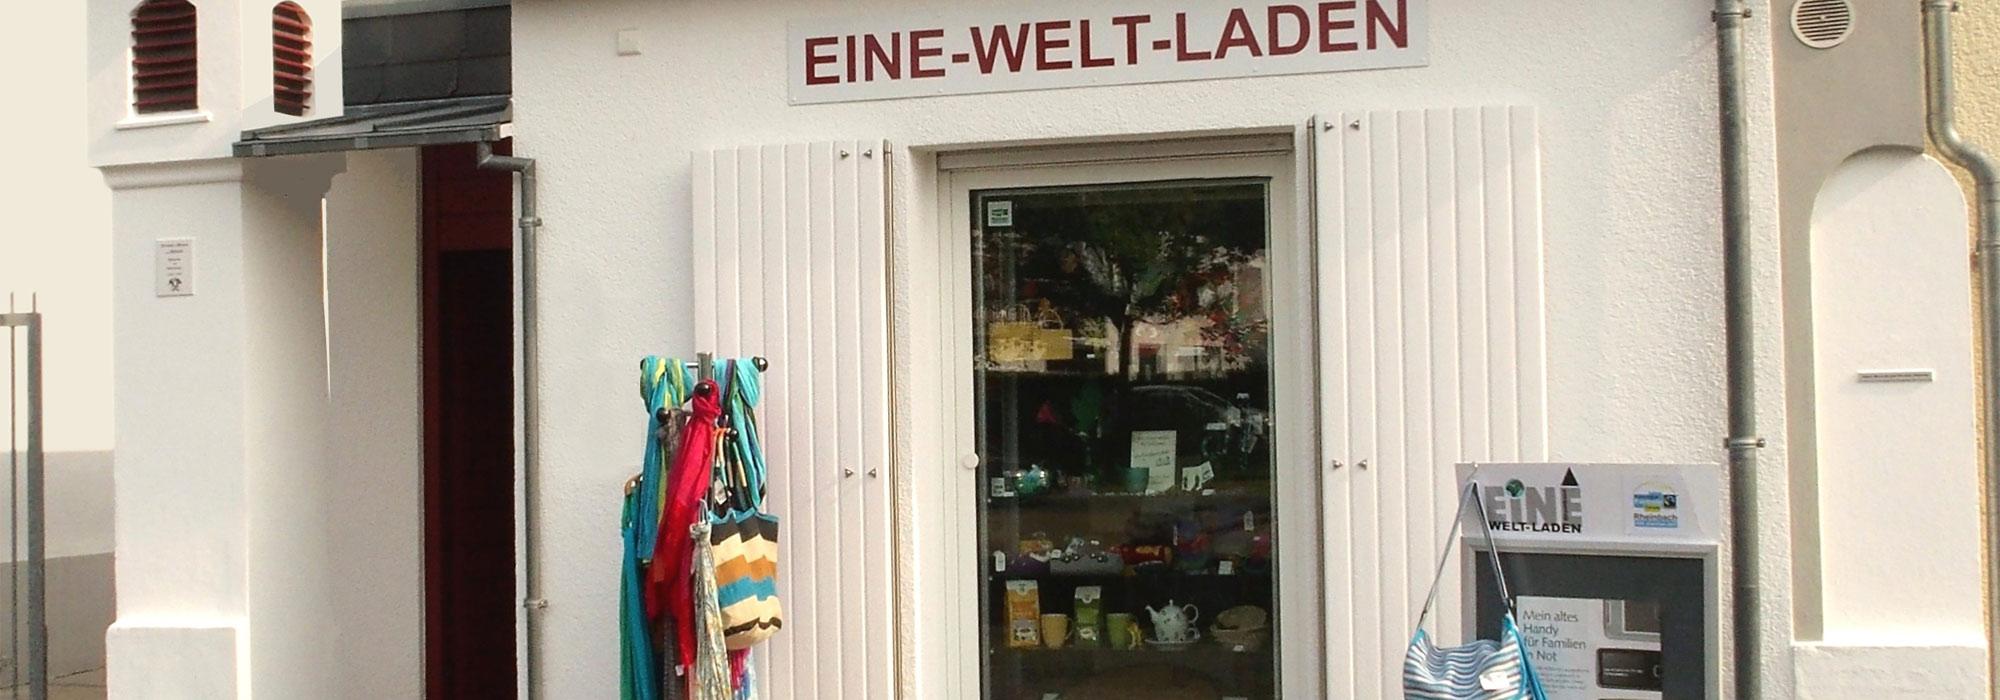 Eine-Welt-Laden in Rheinbach